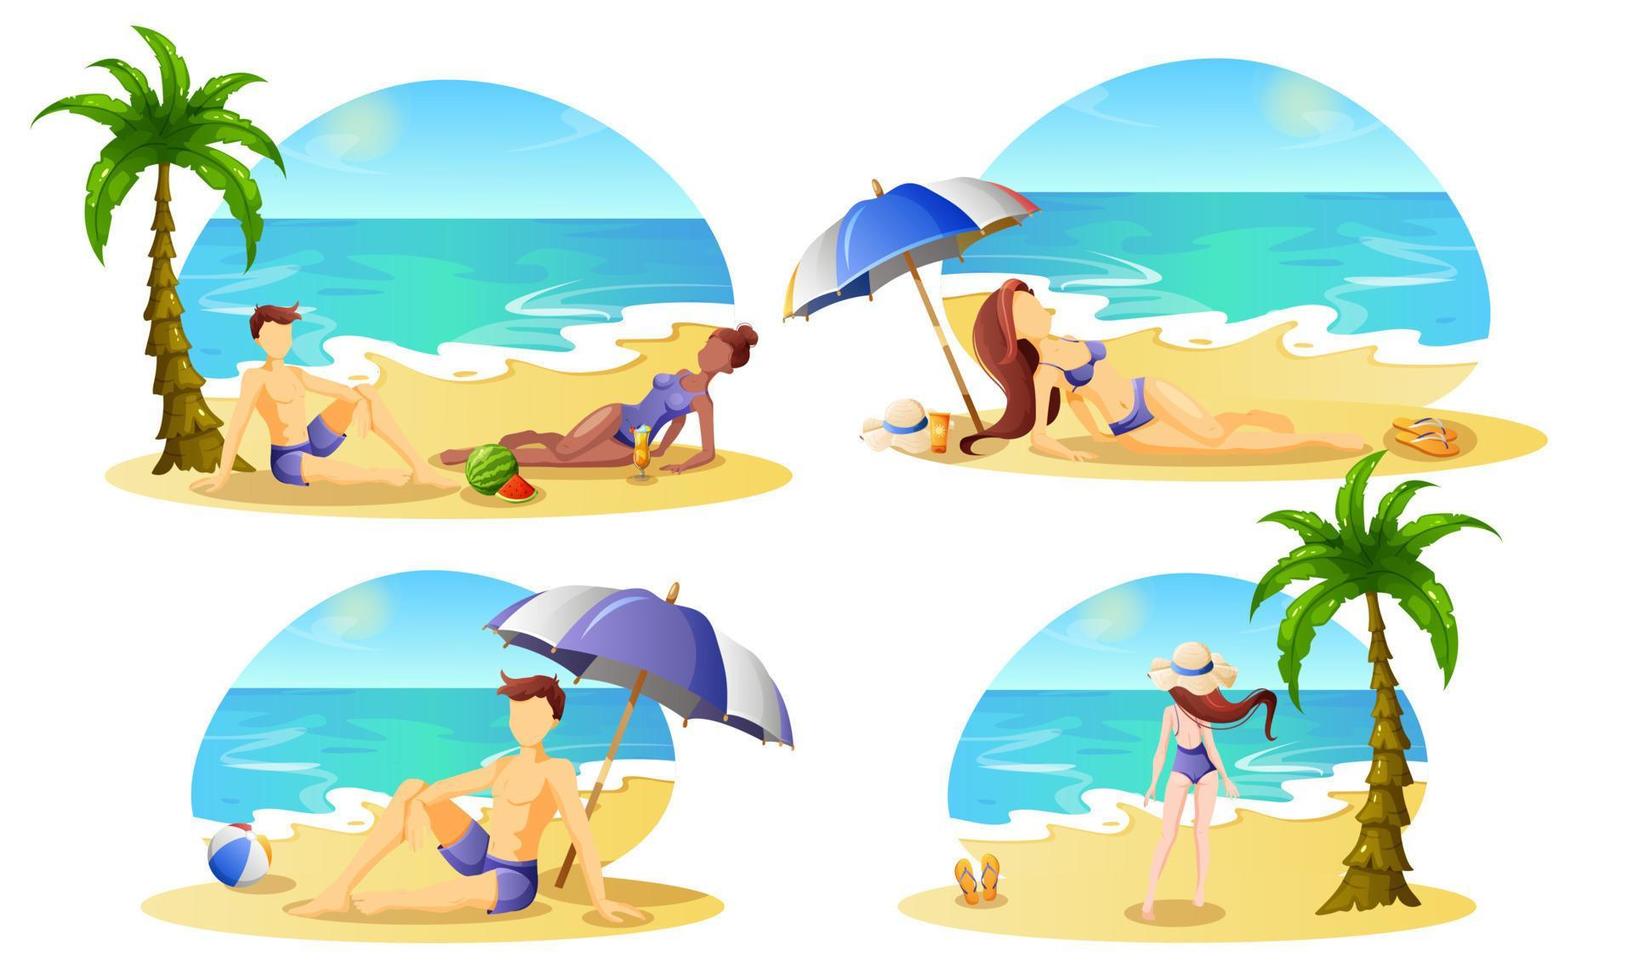 homens e mulheres turistas de férias descansam na praia. recreação, turismo de verão. vetor